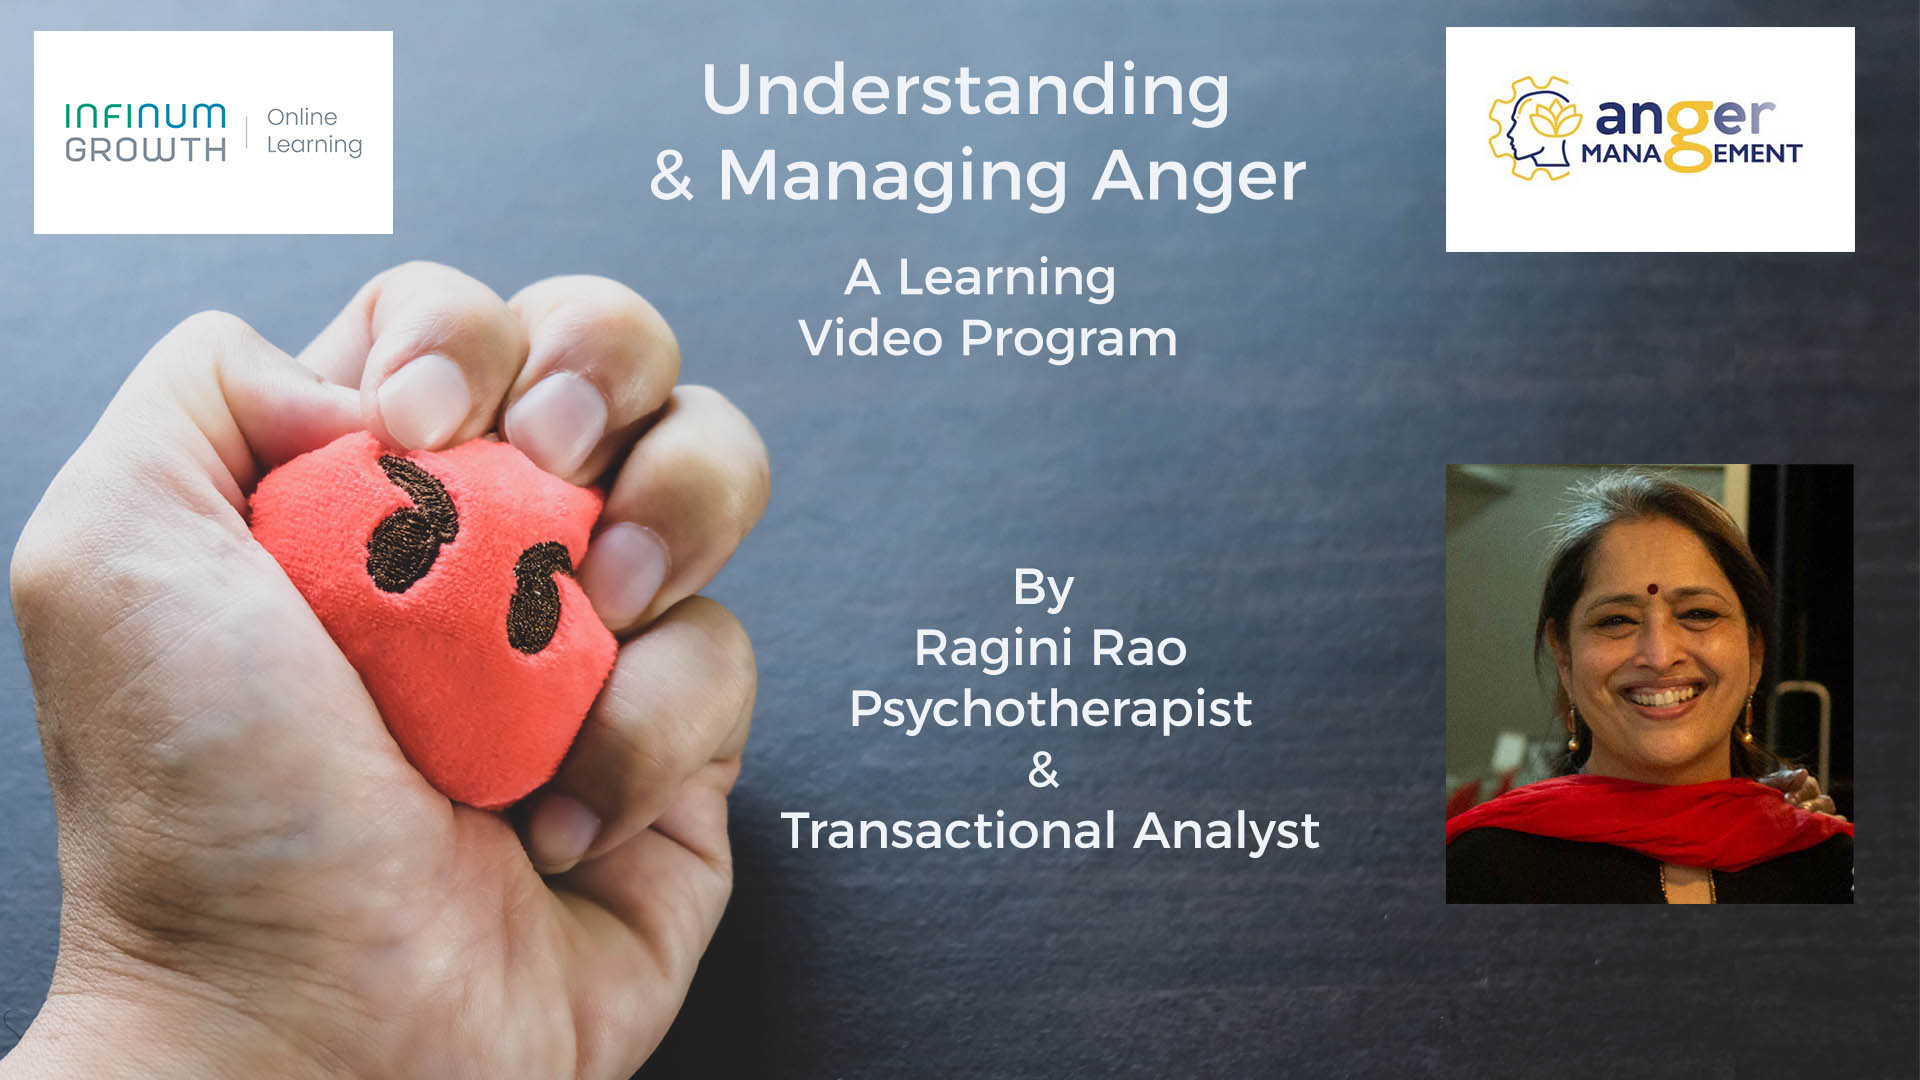 Anger Management – Understanding & Managing Anger